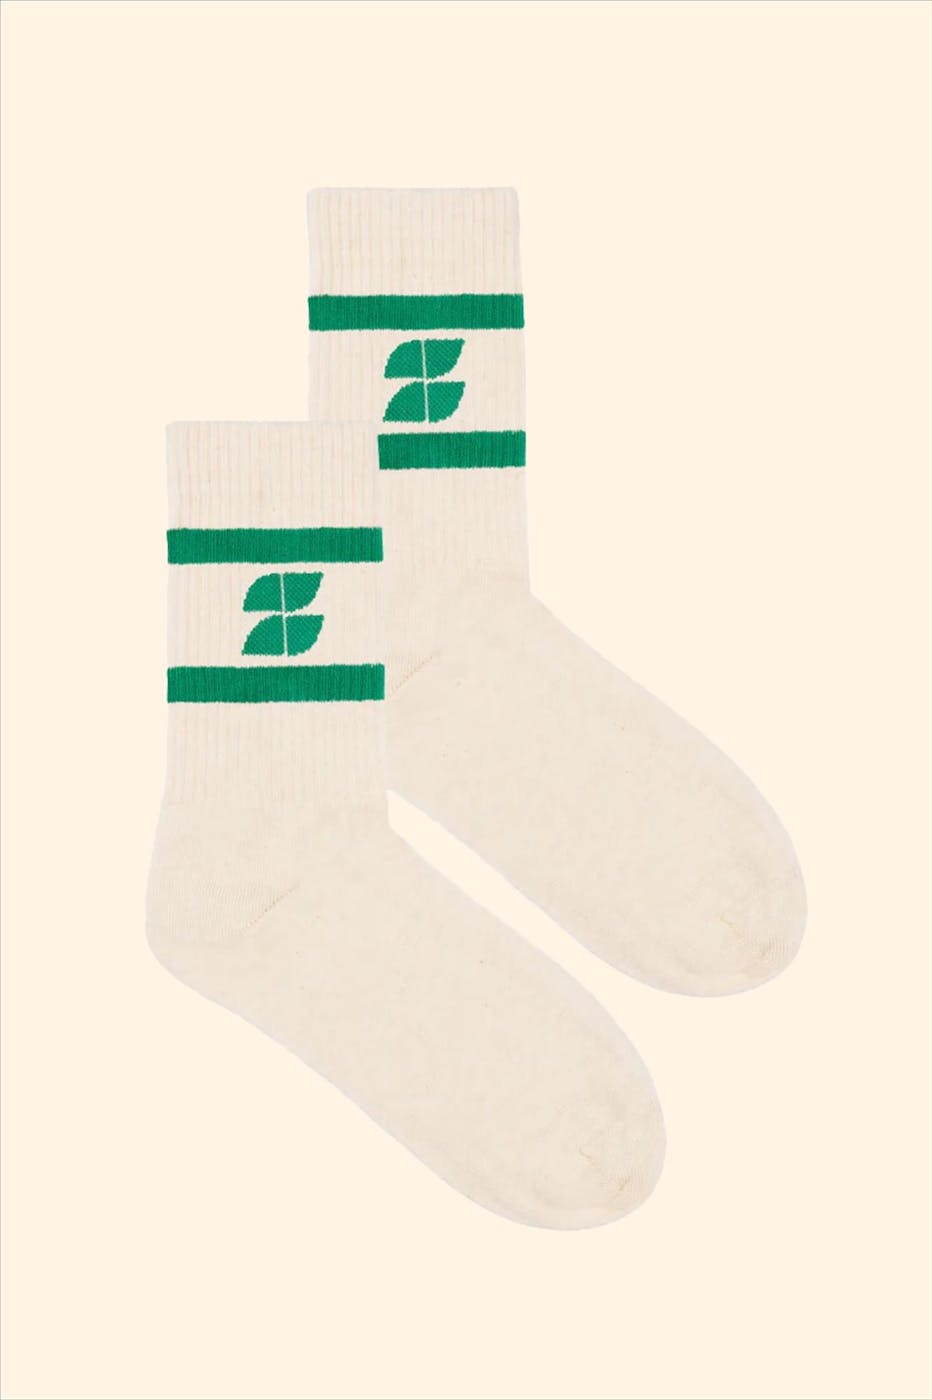 BY BAR - Ecru-Groene Logo sokken